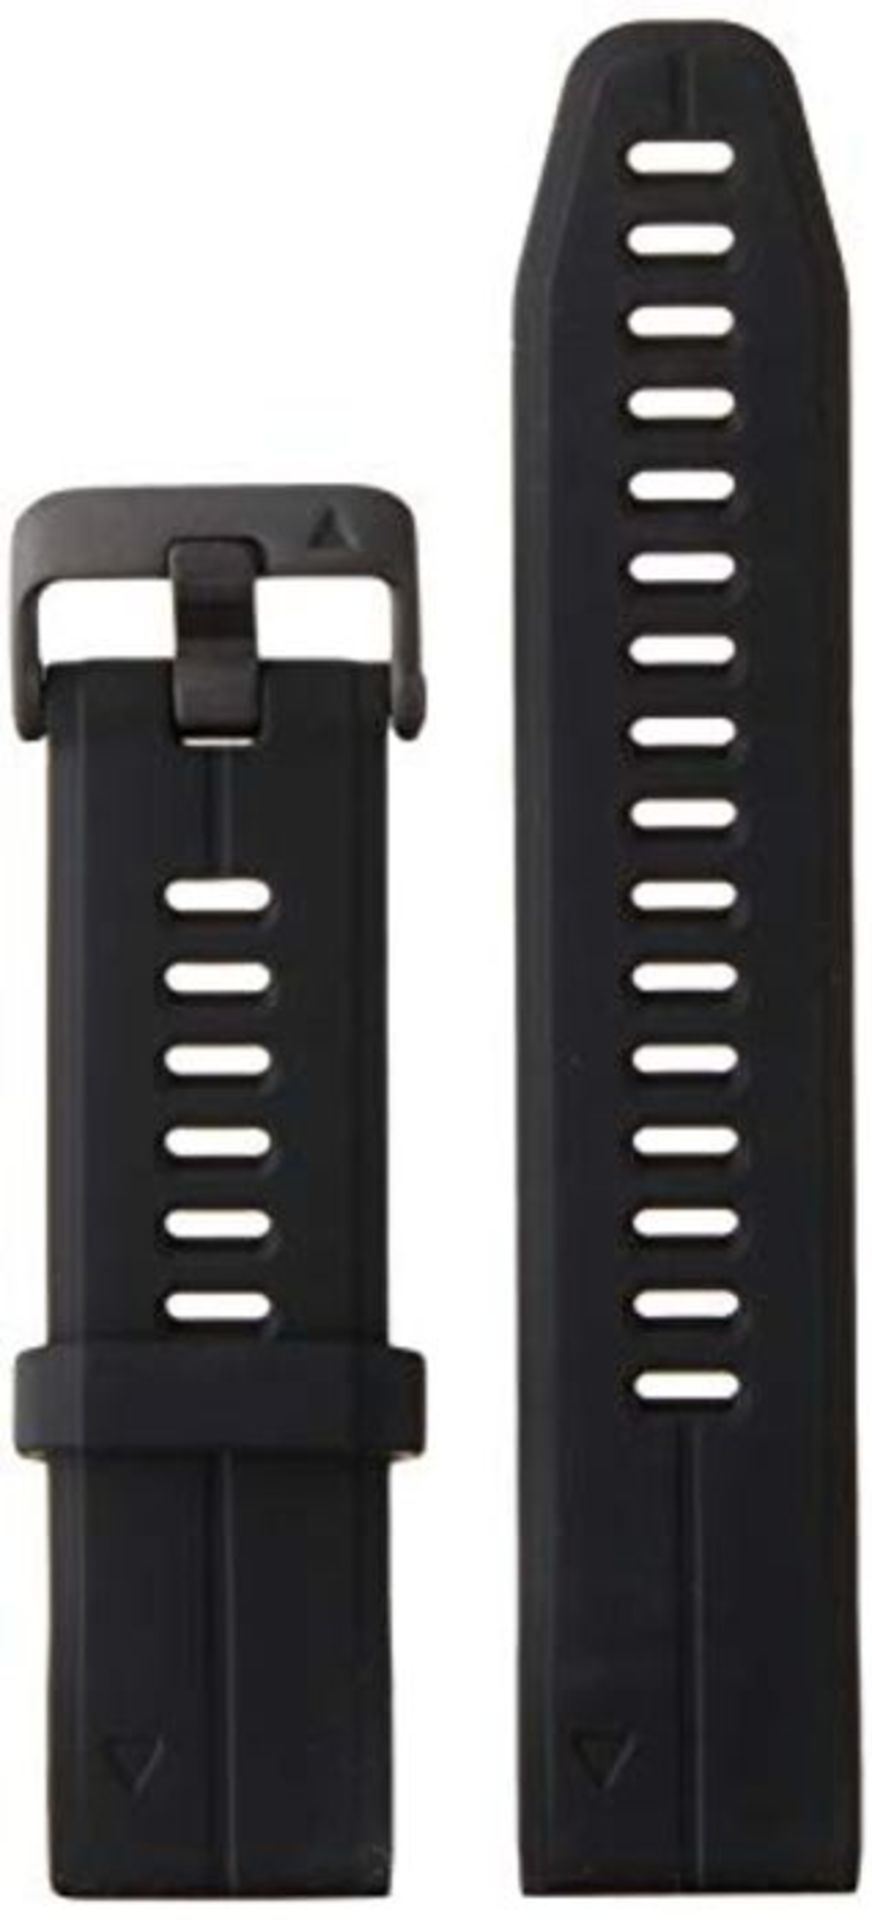 Garmin 010-12739-00 QuickFit 20 Silicone Watch Strap, Accessory for Fenix 5S Plus/Feni